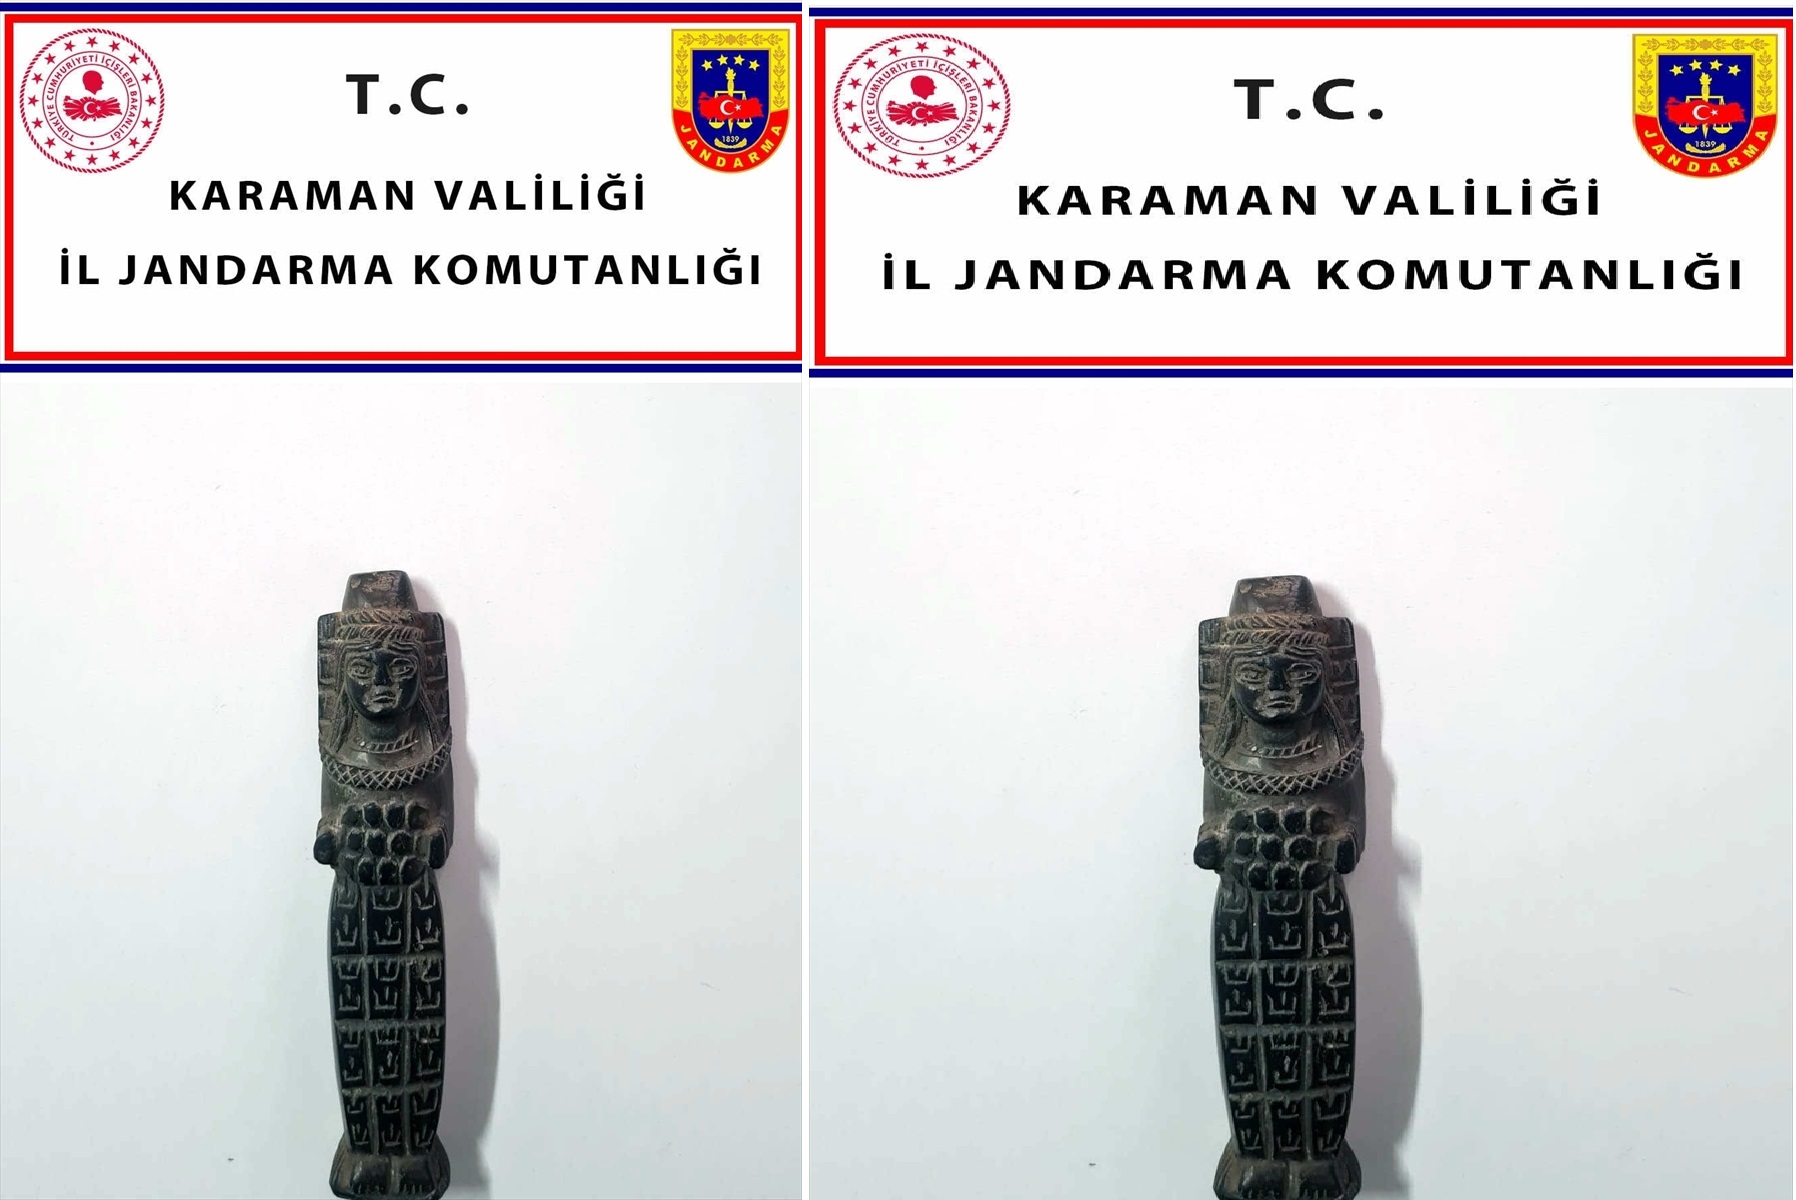 Karaman'da elindeki tarihi eseri satmaya çalışan kişi yakalandı